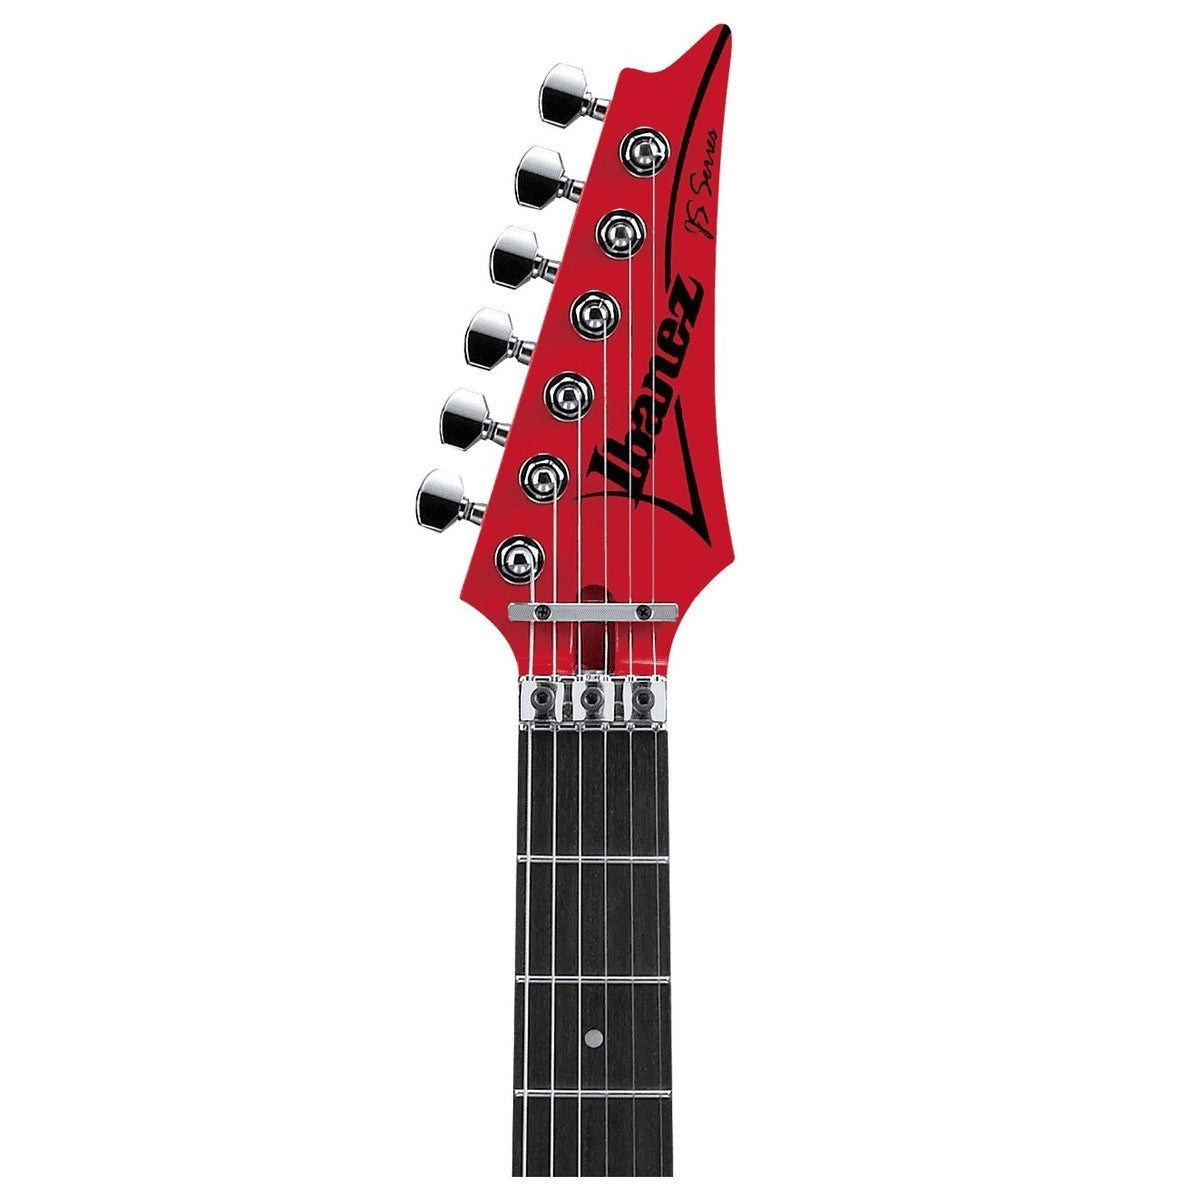 Ibanez Joe Satriani JS2480-MCR Muscle Car Red met koffer